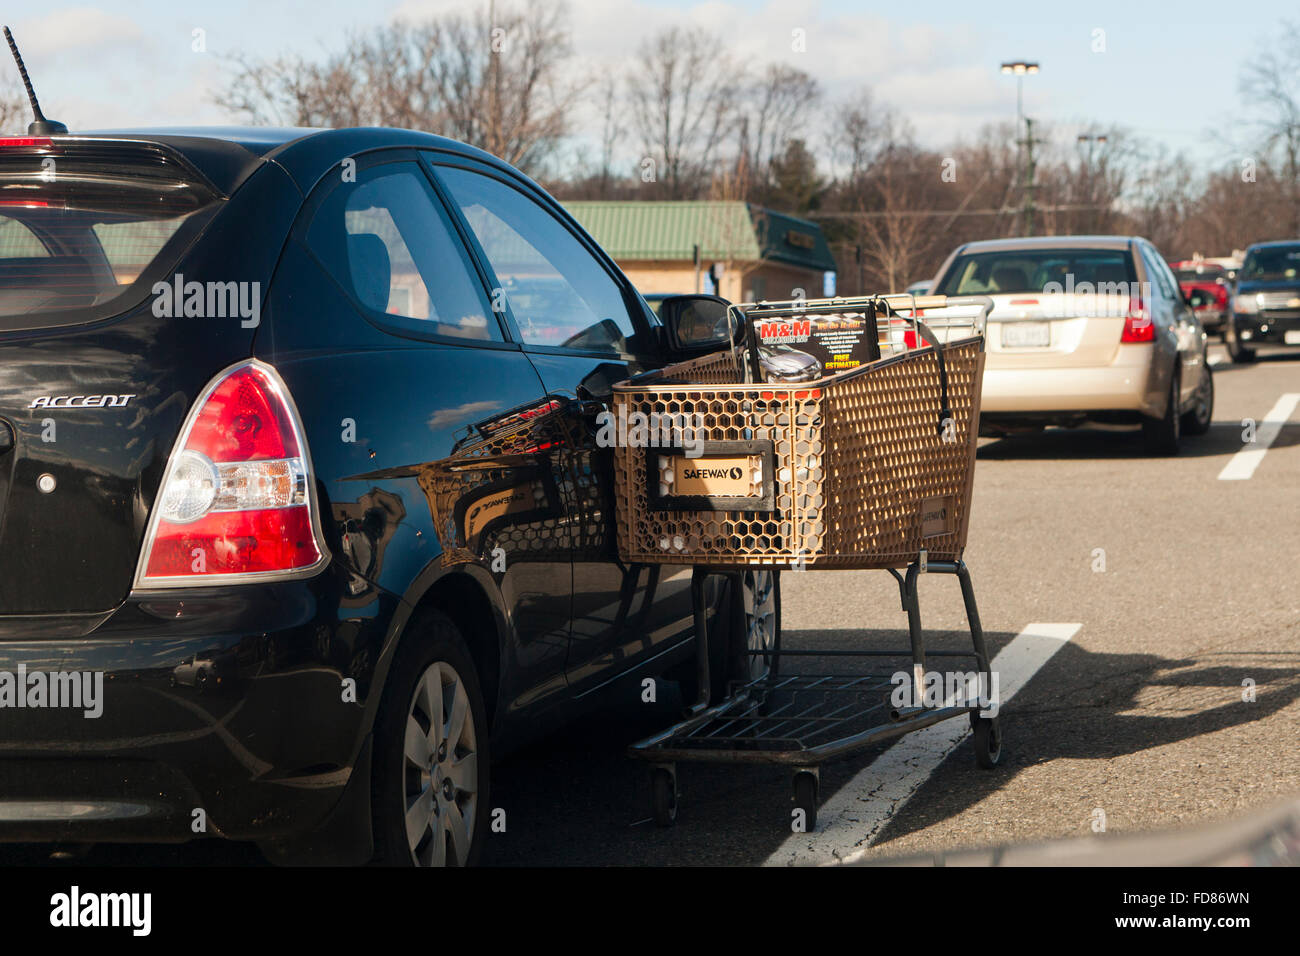 Carrito de compras apoyándose en coche aparcado - EE.UU. Foto de stock